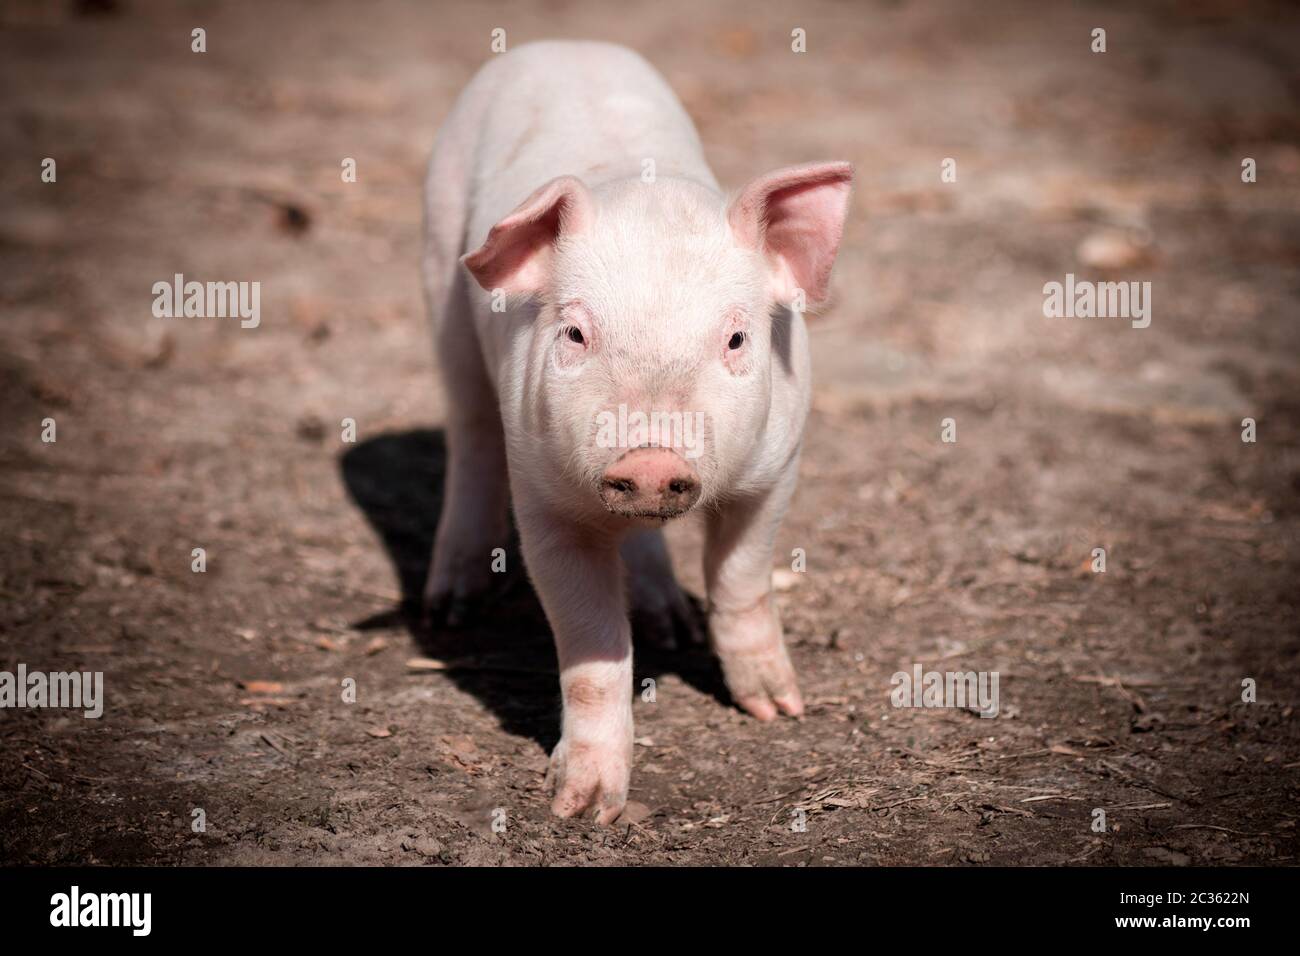 Il maiale sta guardando la macchina fotografica, il concetto di allevamento del maiale. Foto Stock